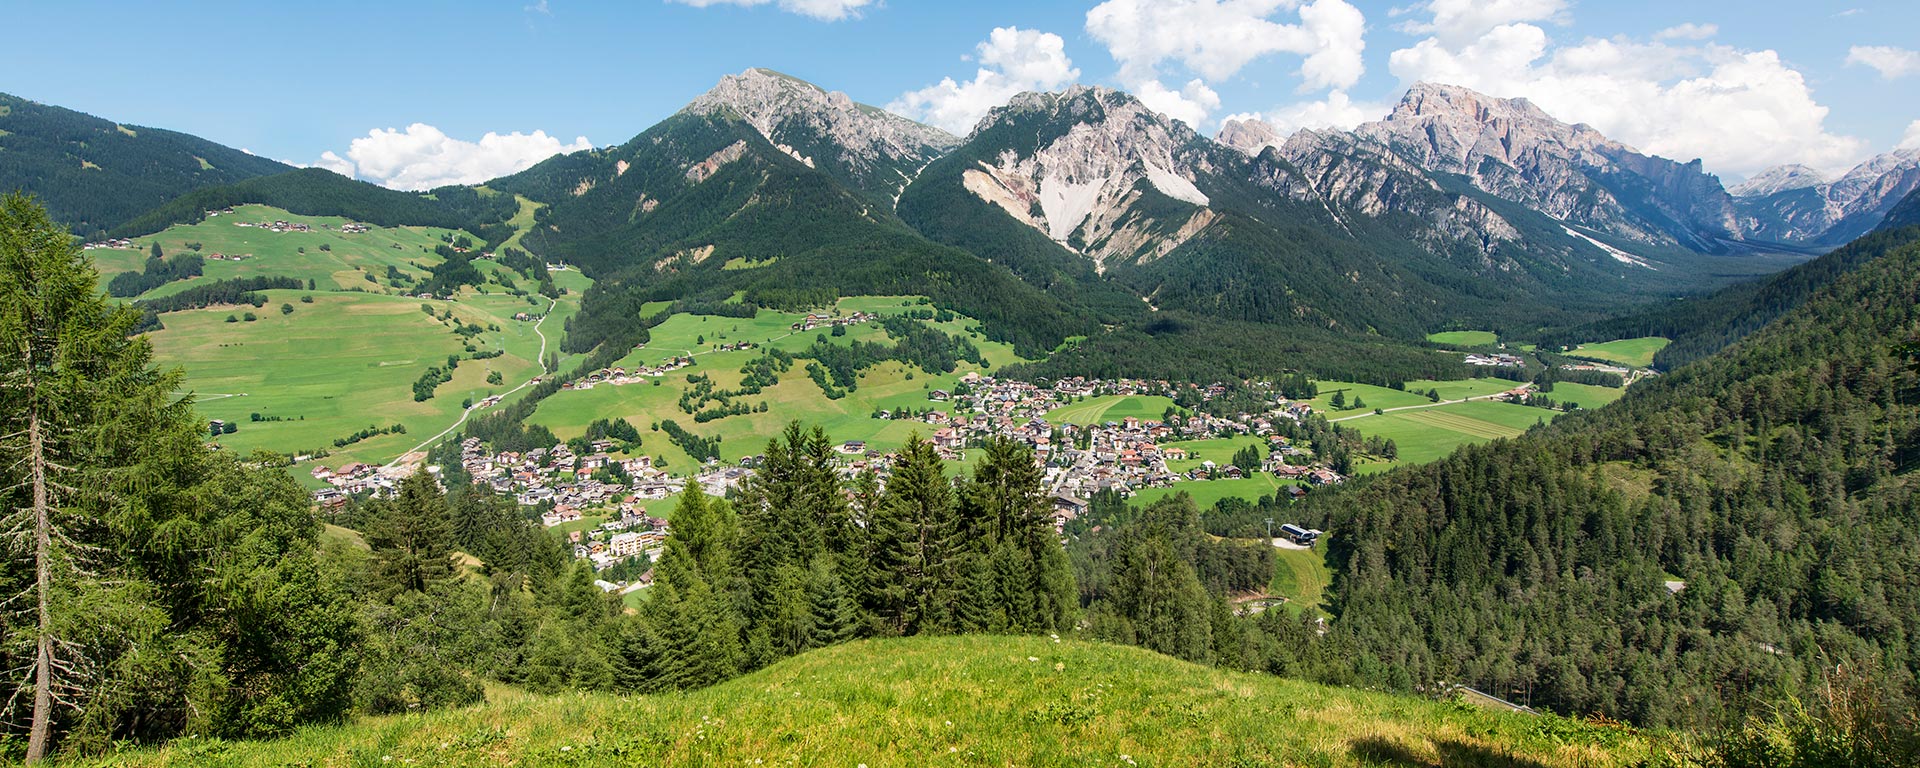 St. Vigil - Ansicht des Dorfes in den Dolomiten im Sommer